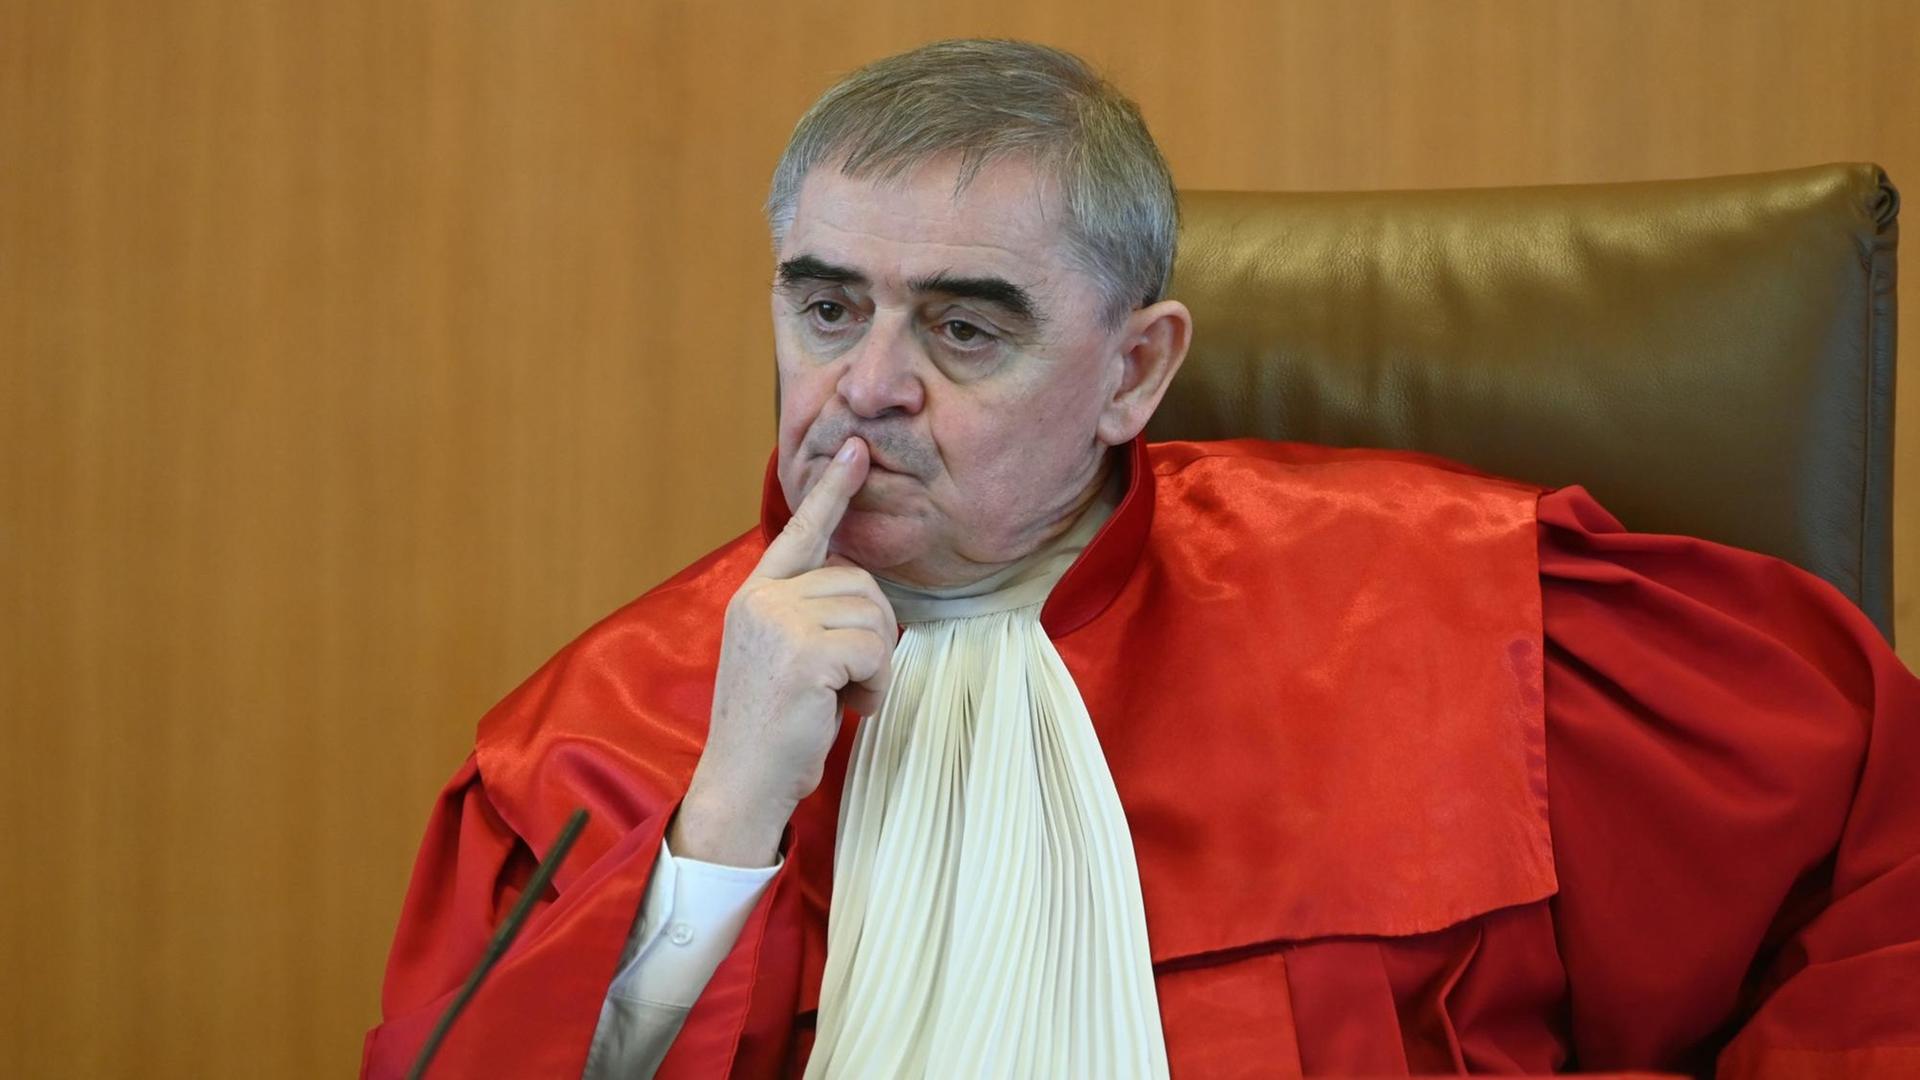 Justiz - Scheidender Bundesverfassungsrichter Müller hält Ex-Politiker am höchsten deutschen Gericht für sinnvoll